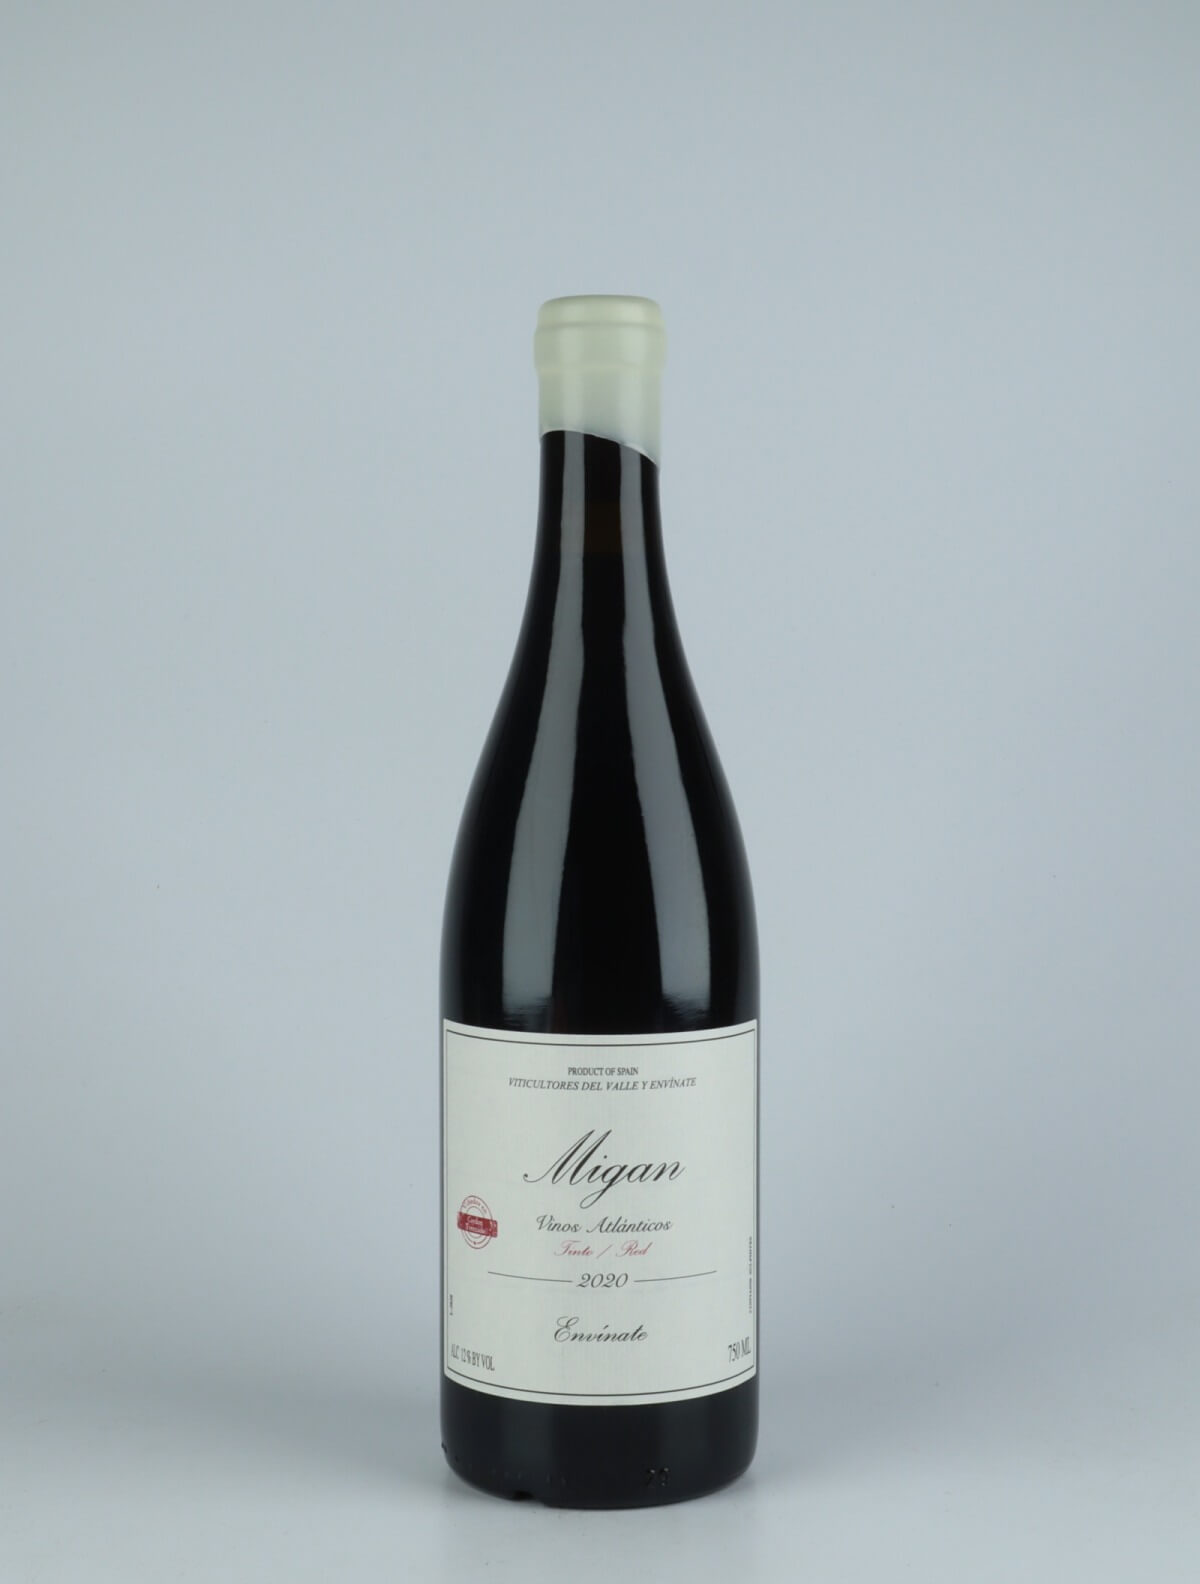 En flaske 2020 Migan - Tenerife Rødvin fra Envínate, Tenerife i Spanien